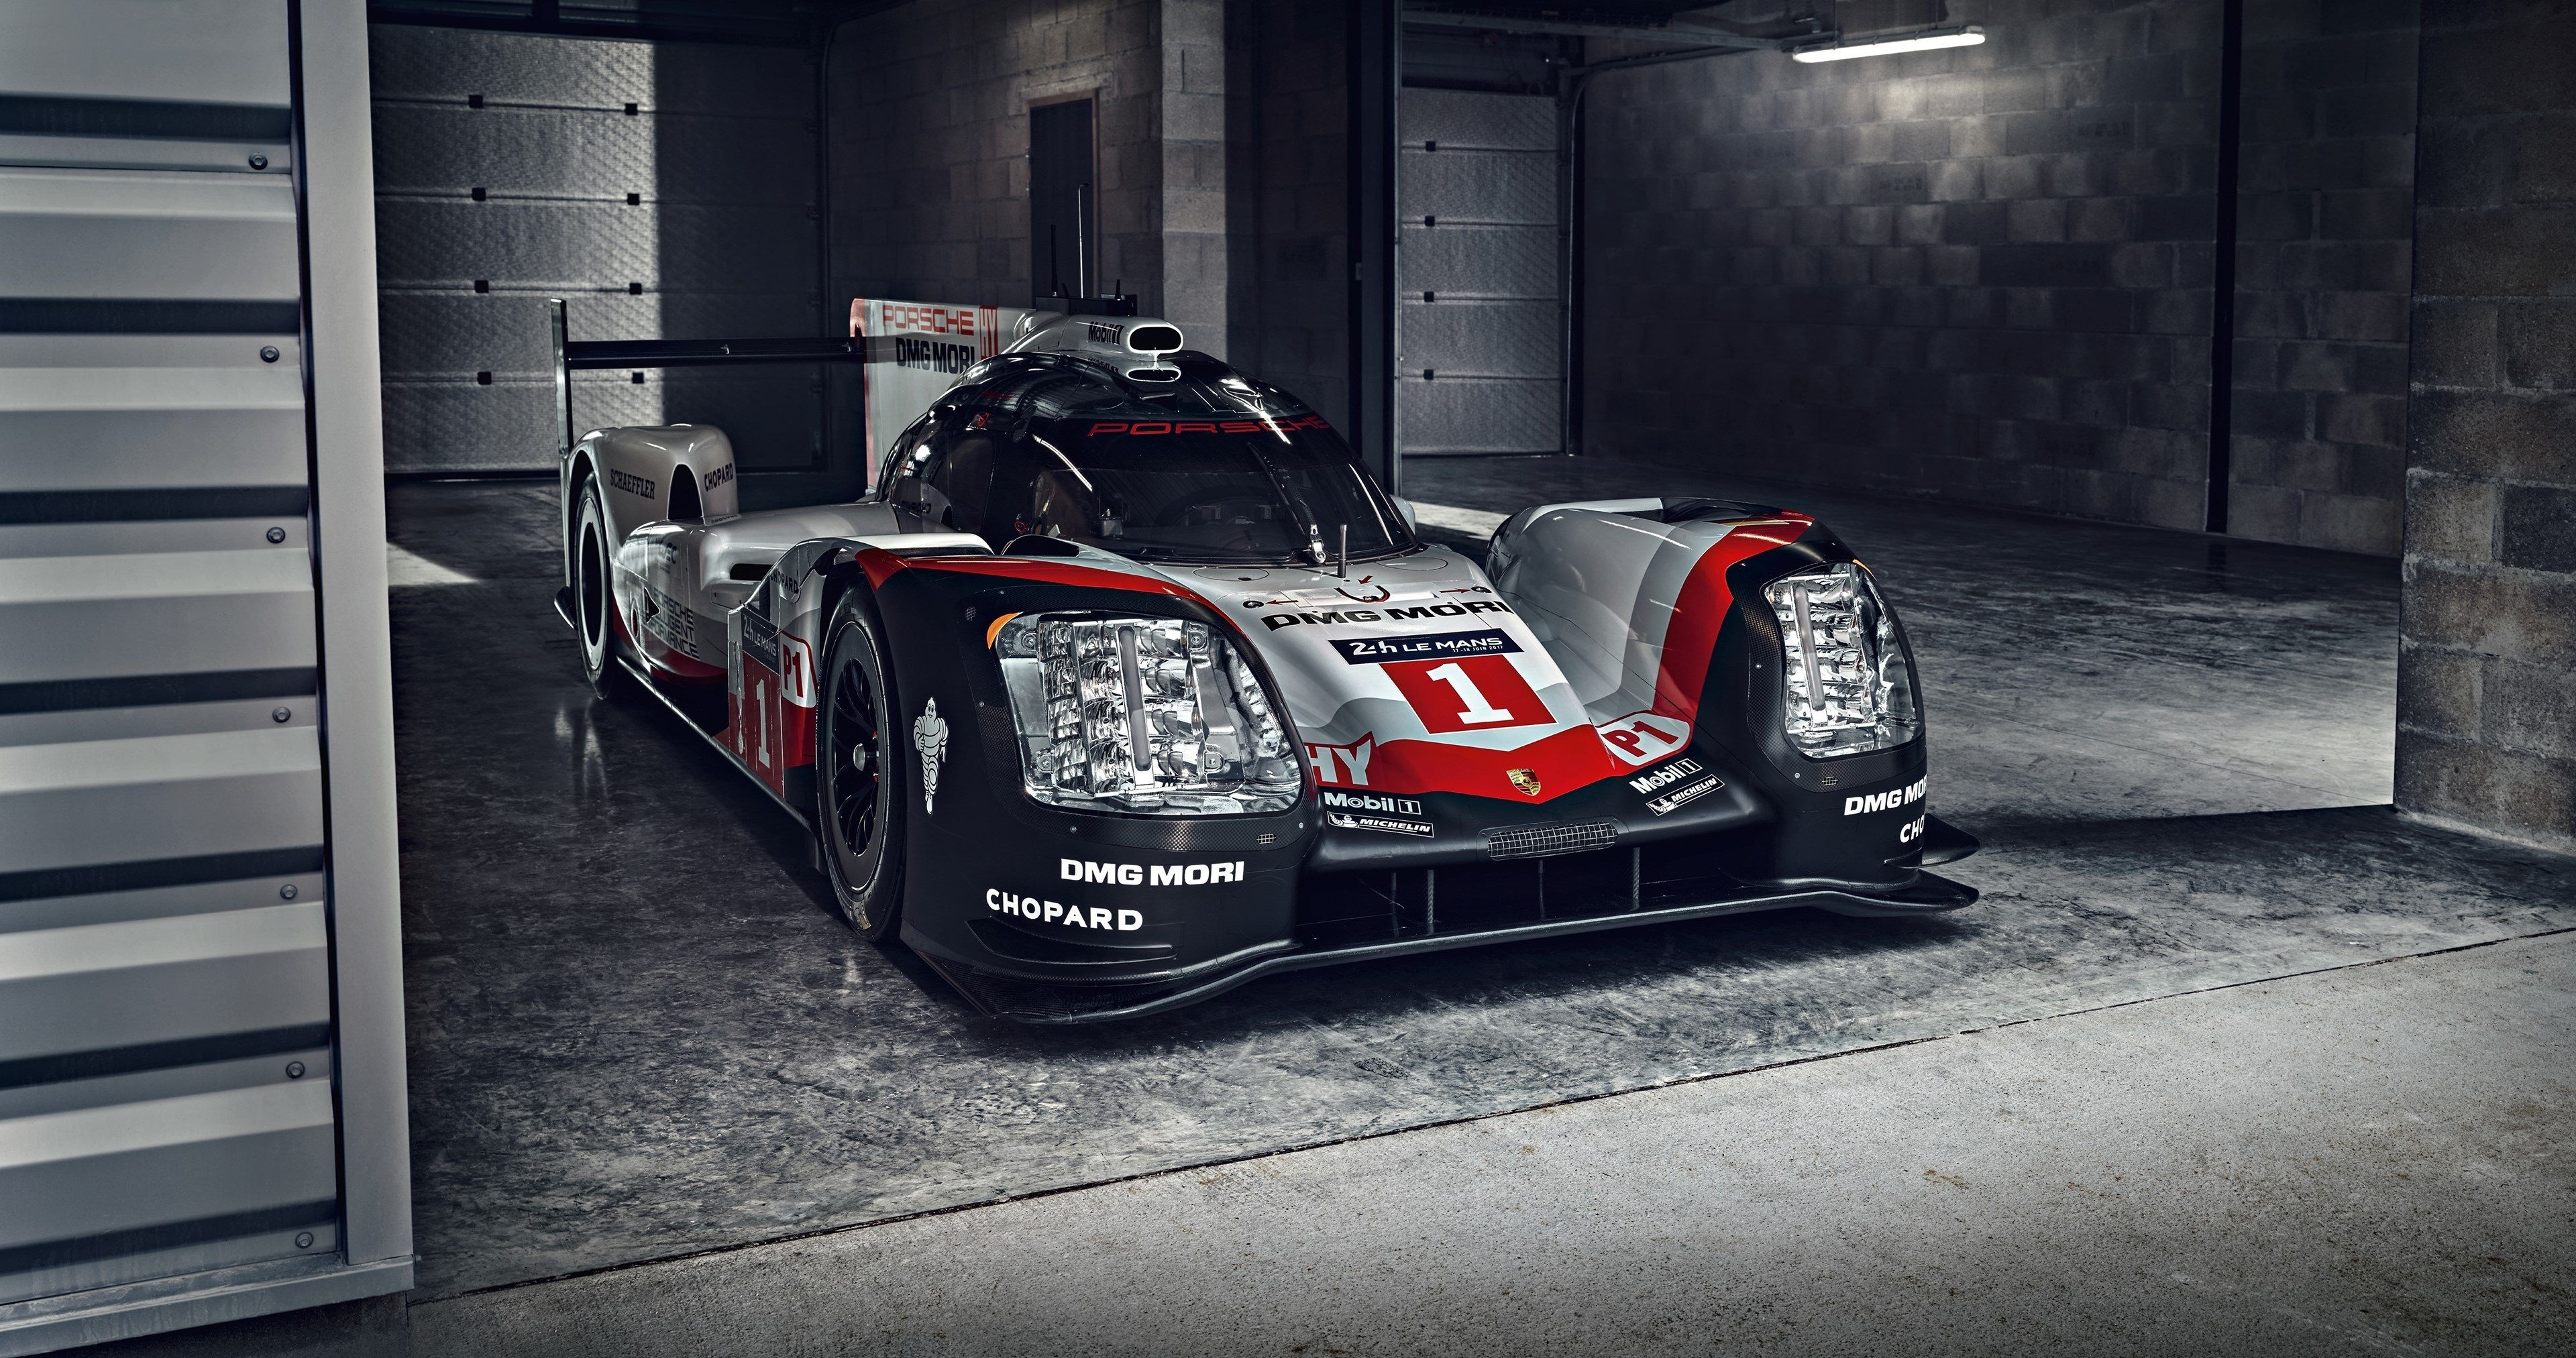 Le Mans race, Porsche 919 Hybrid, Amazing wallpaper, Luxury autos, 3840x2030 HD Desktop